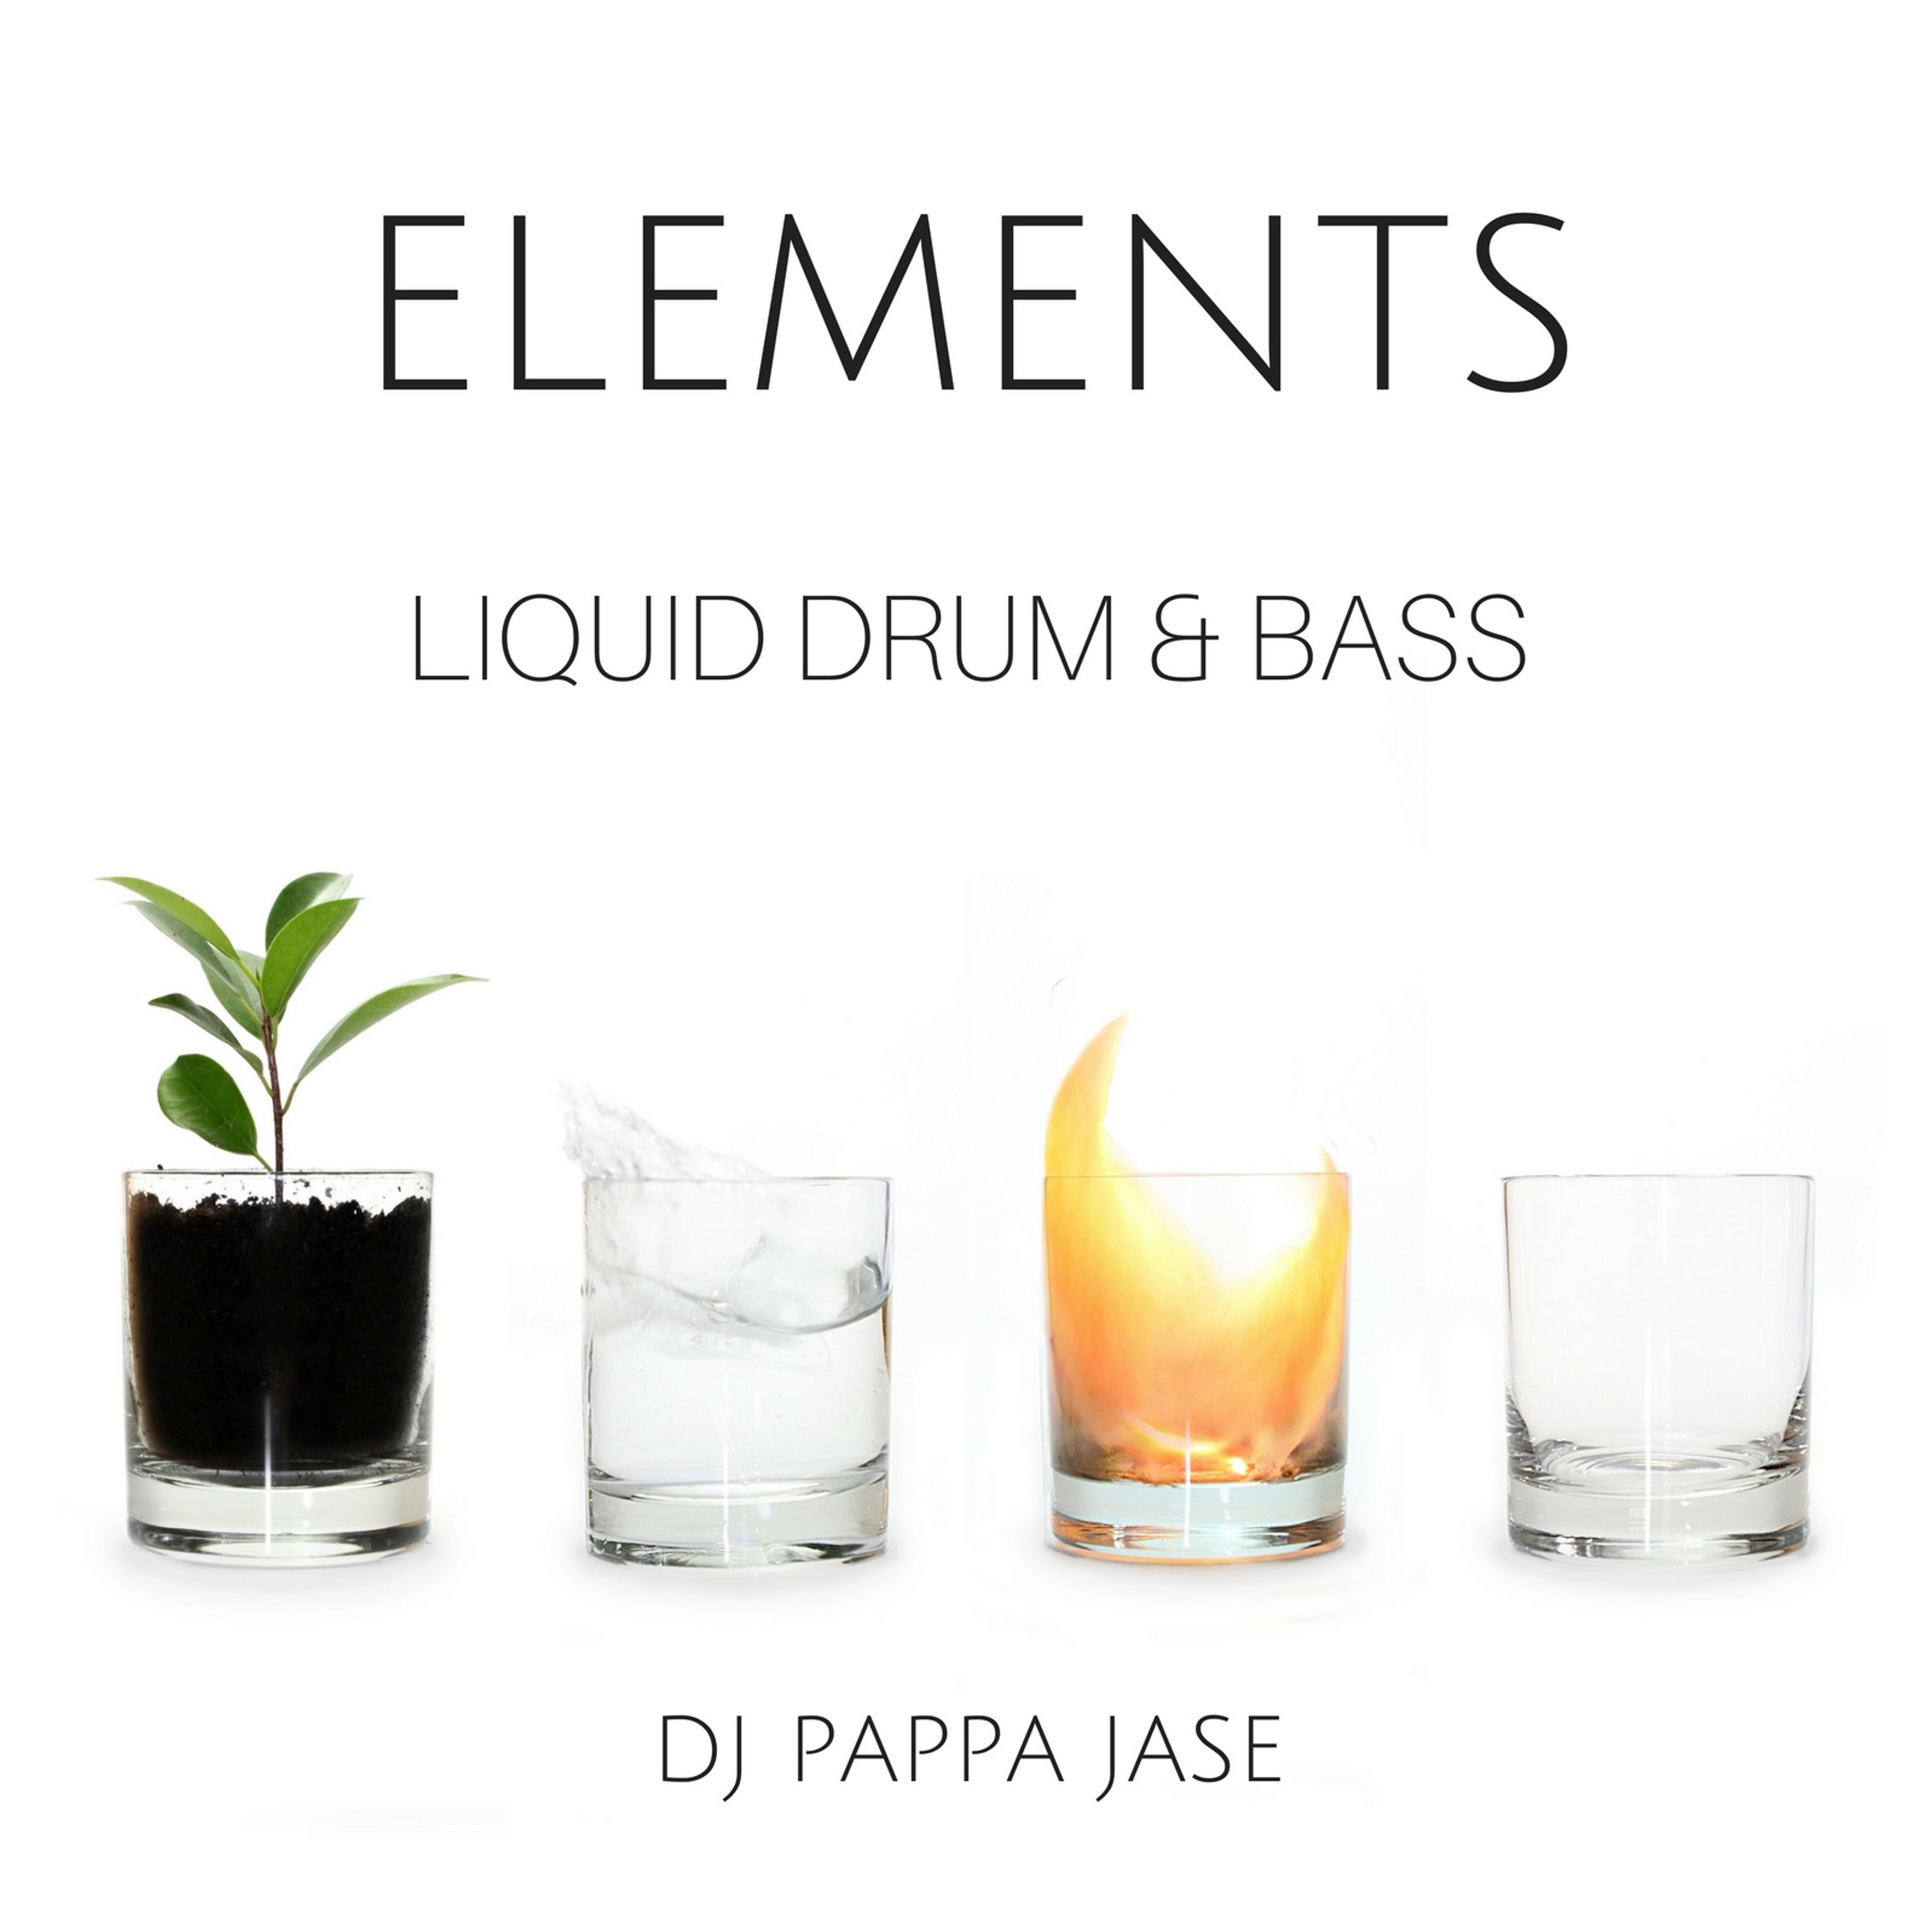 Elements - A Liquid Drum & Bass Podcast Ep 24: Liquid Black Artwork